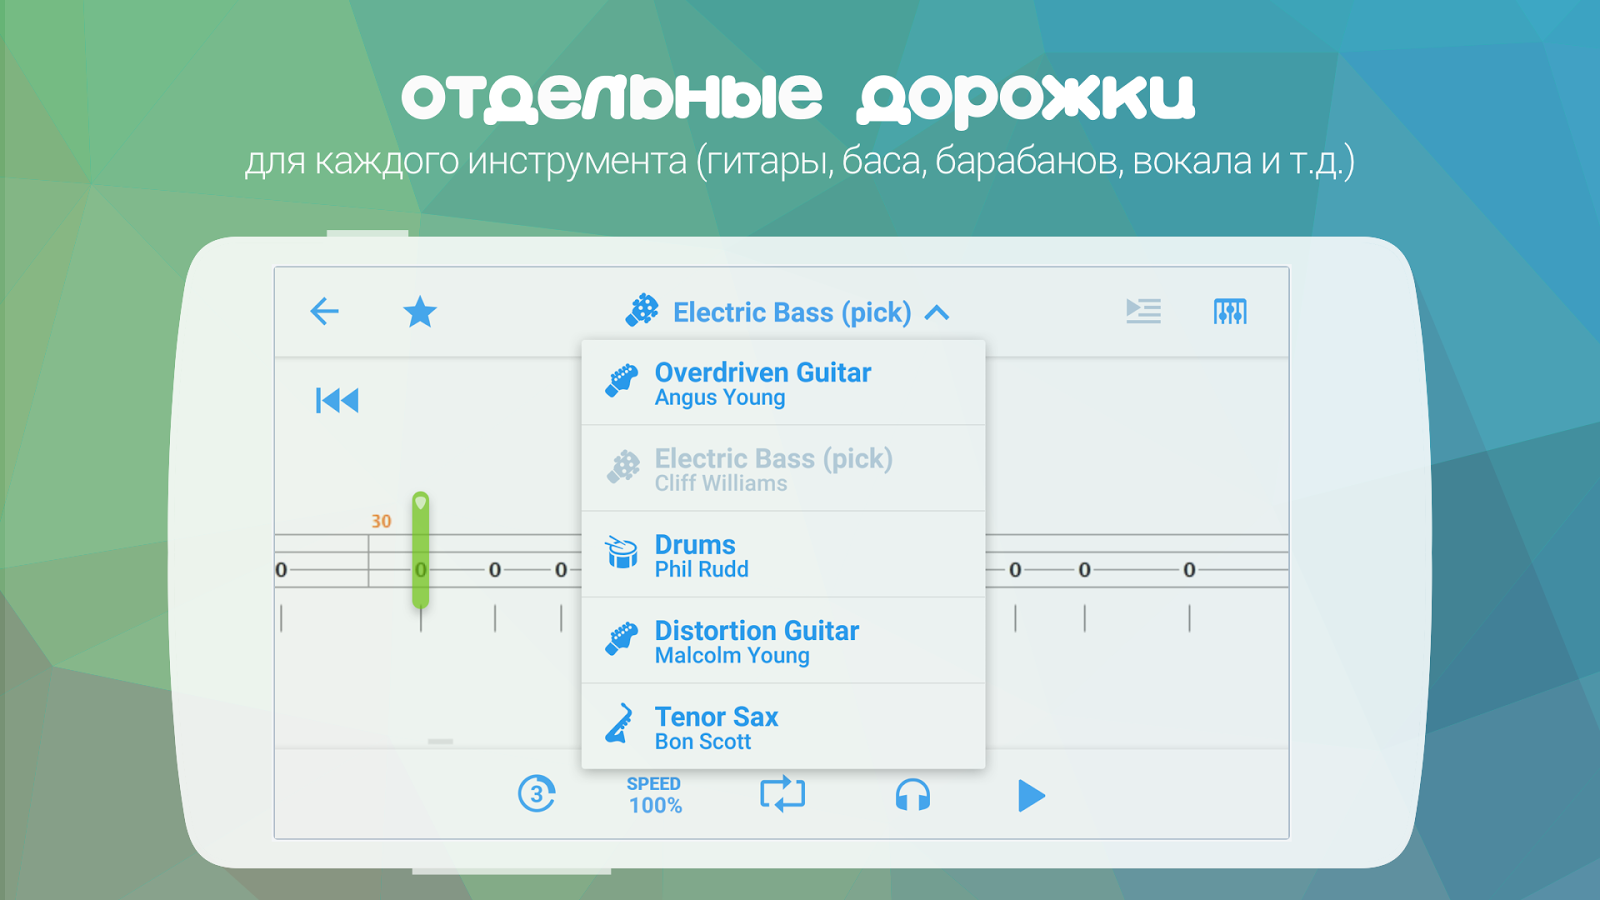 Скачать Songsterr 2.4.2 Для Android